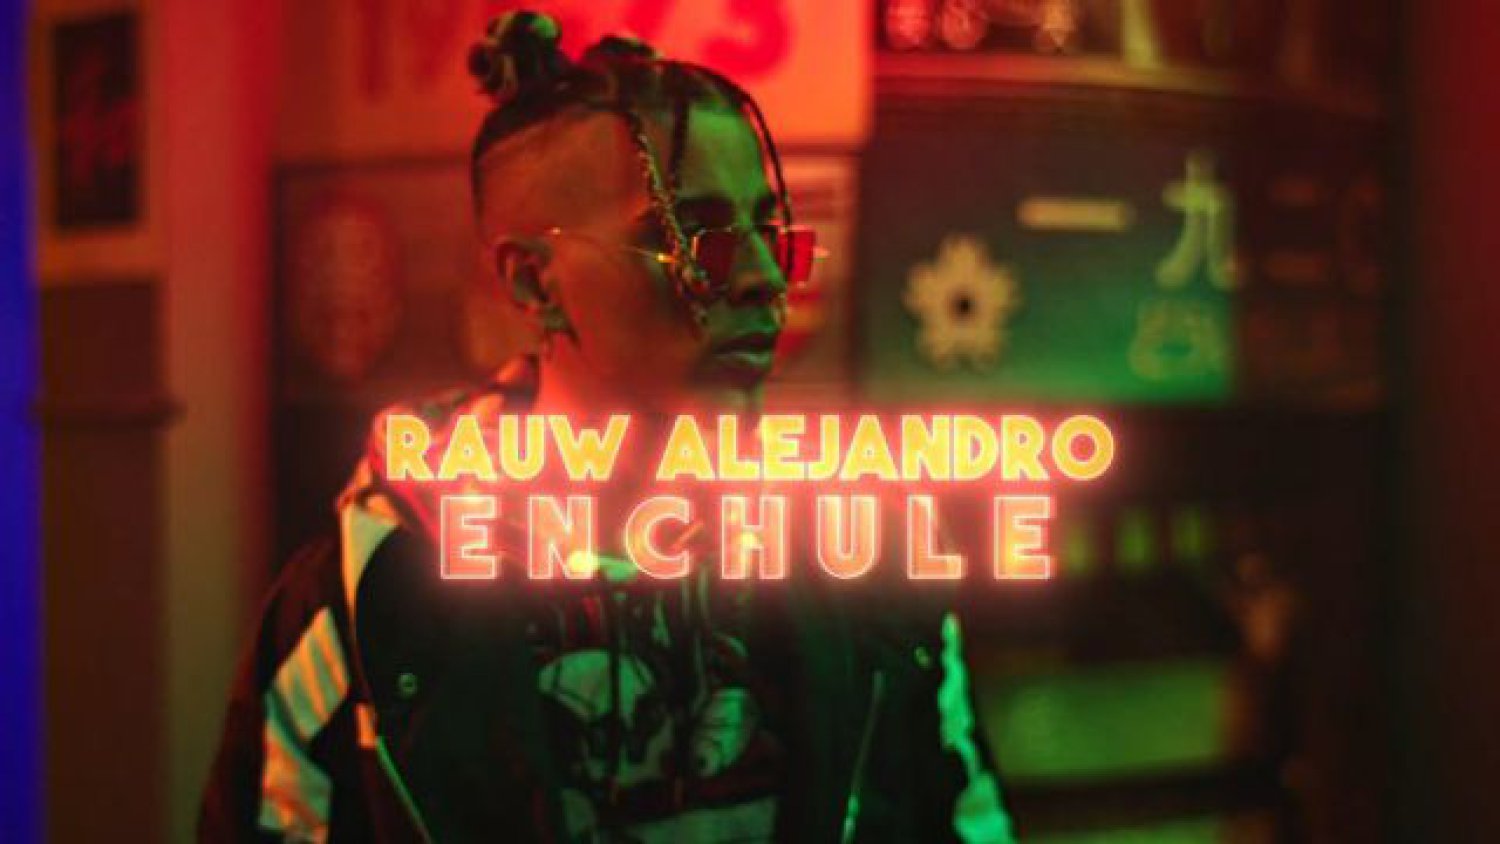 Rauw Alejandro triunfa con su nuevo single, Enchule | Videoclip |  Actualidad | LOS40